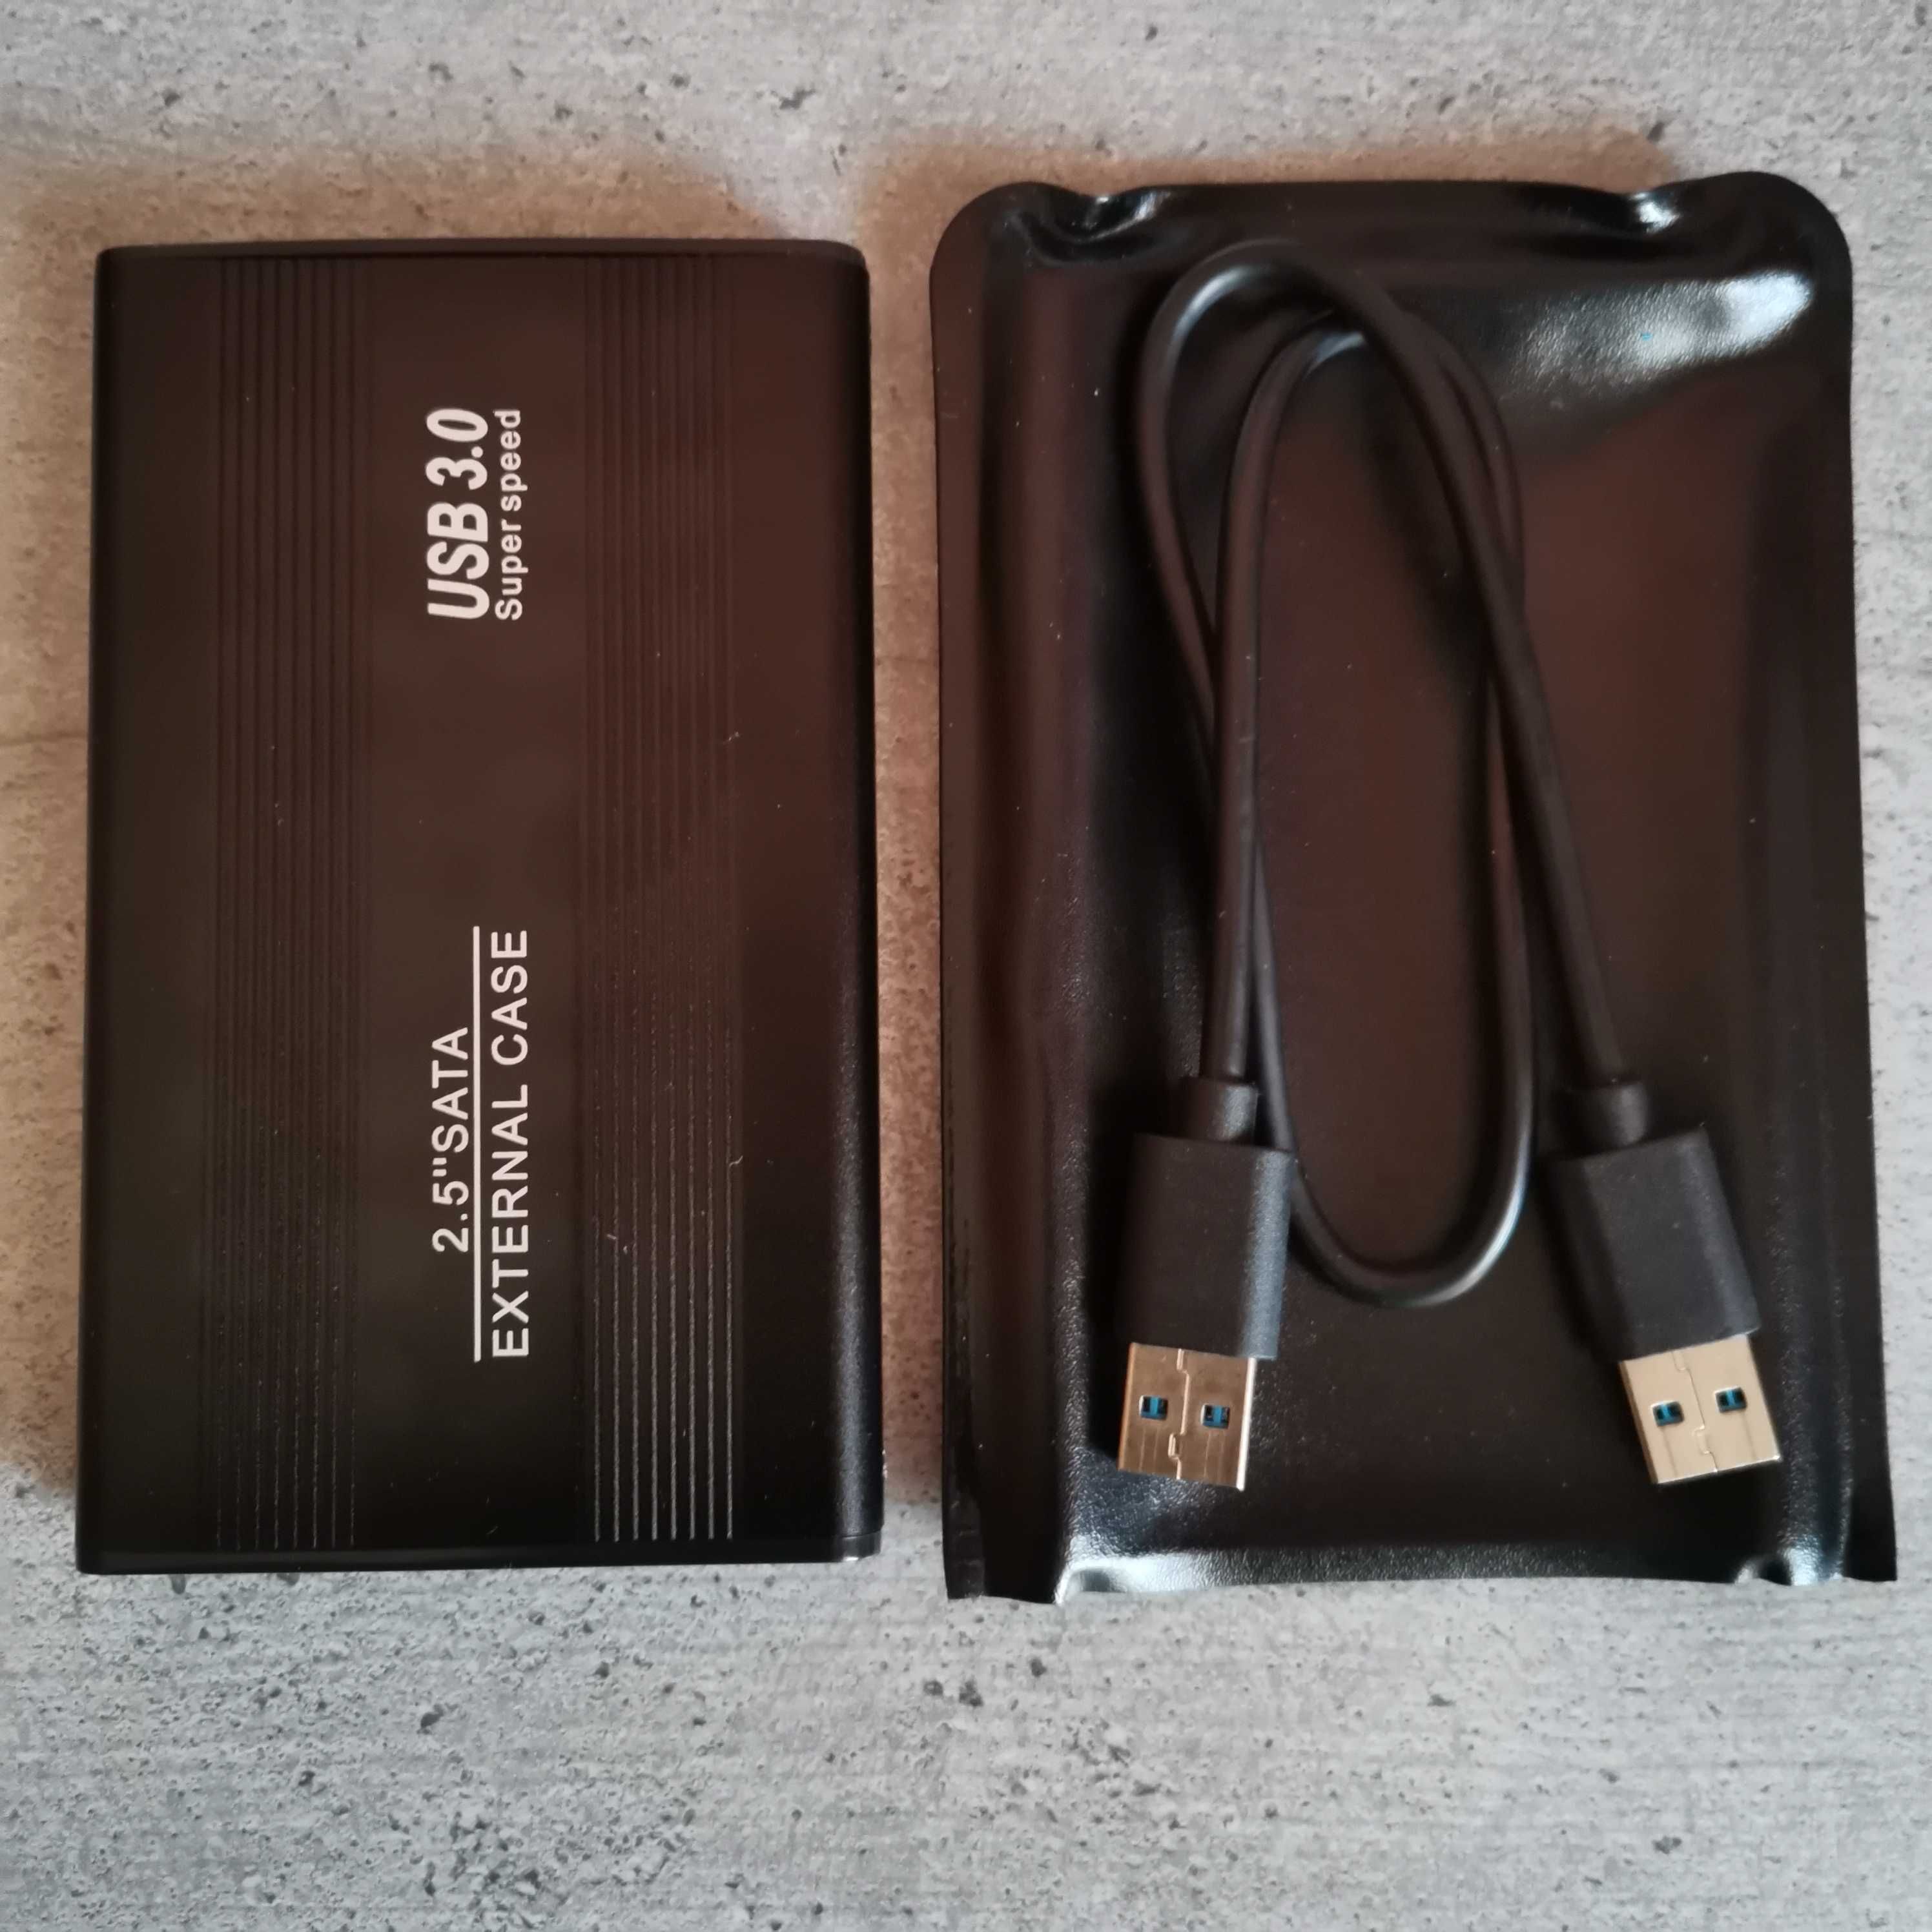 HDD extern 1TB Western Digital USB 3.0 2,5"